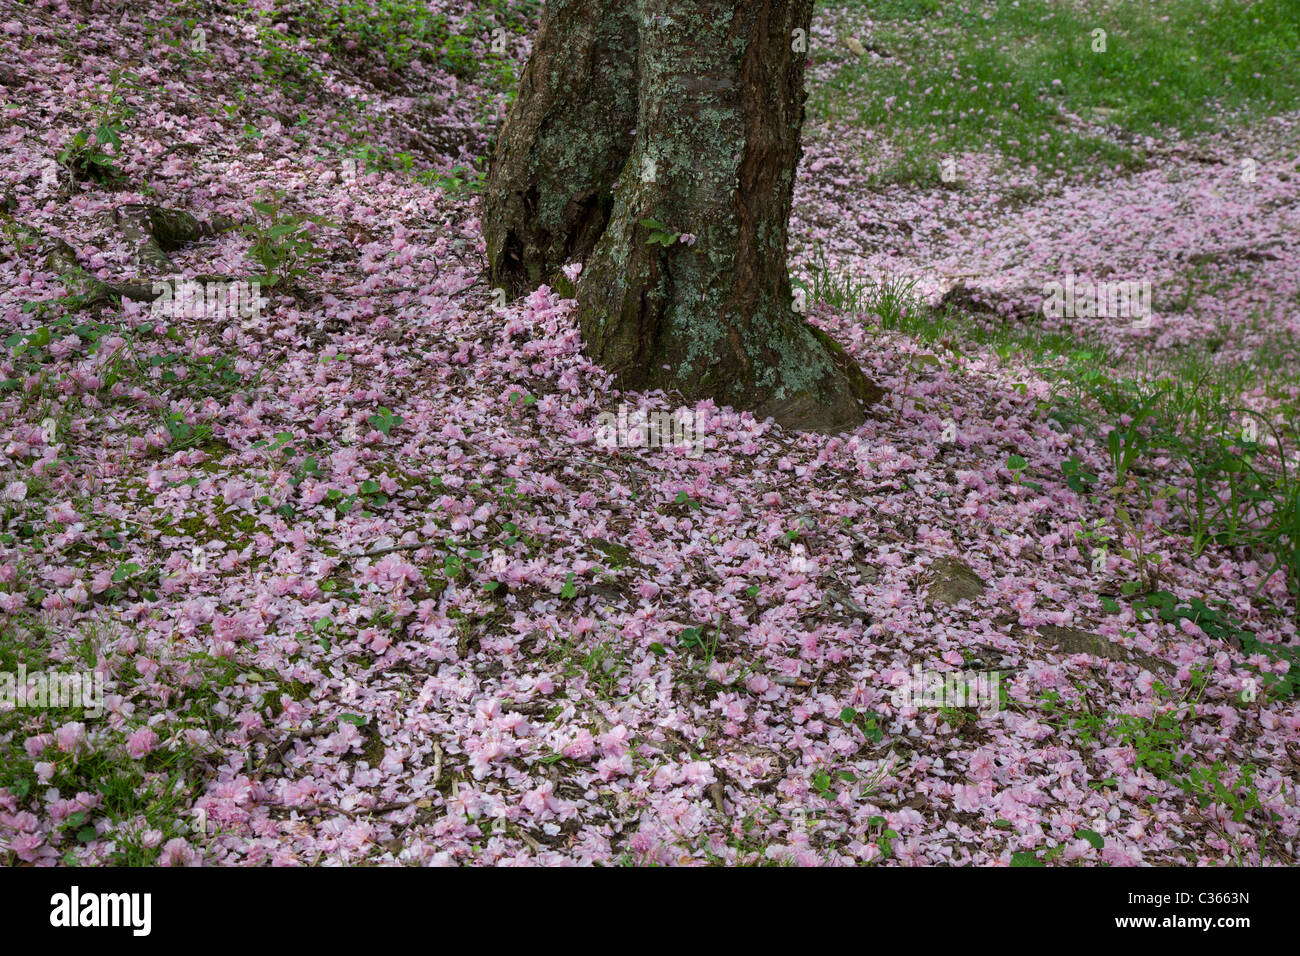 Oak Ridge, Tennessee - Kirschblüten aus einem Kwanzan Kirschbaum auf dem Boden an der University of Tennessee Arboretum. Stockfoto